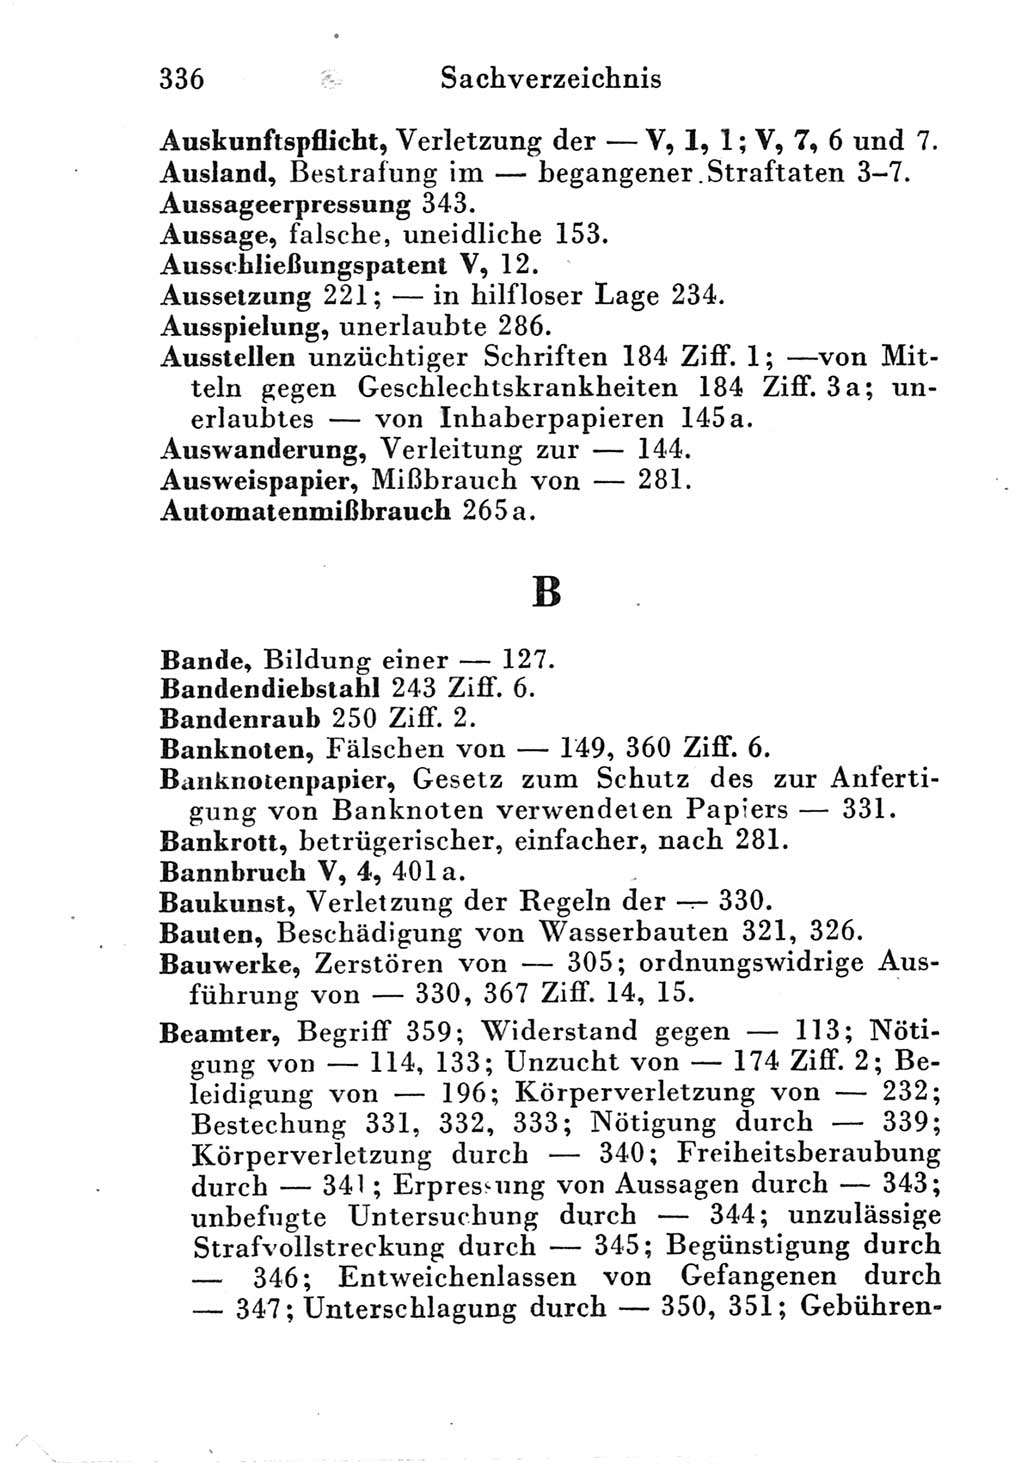 Strafgesetzbuch (StGB) und andere Strafgesetze [Deutsche Demokratische Republik (DDR)] 1951, Seite 336 (StGB Strafges. DDR 1951, S. 336)